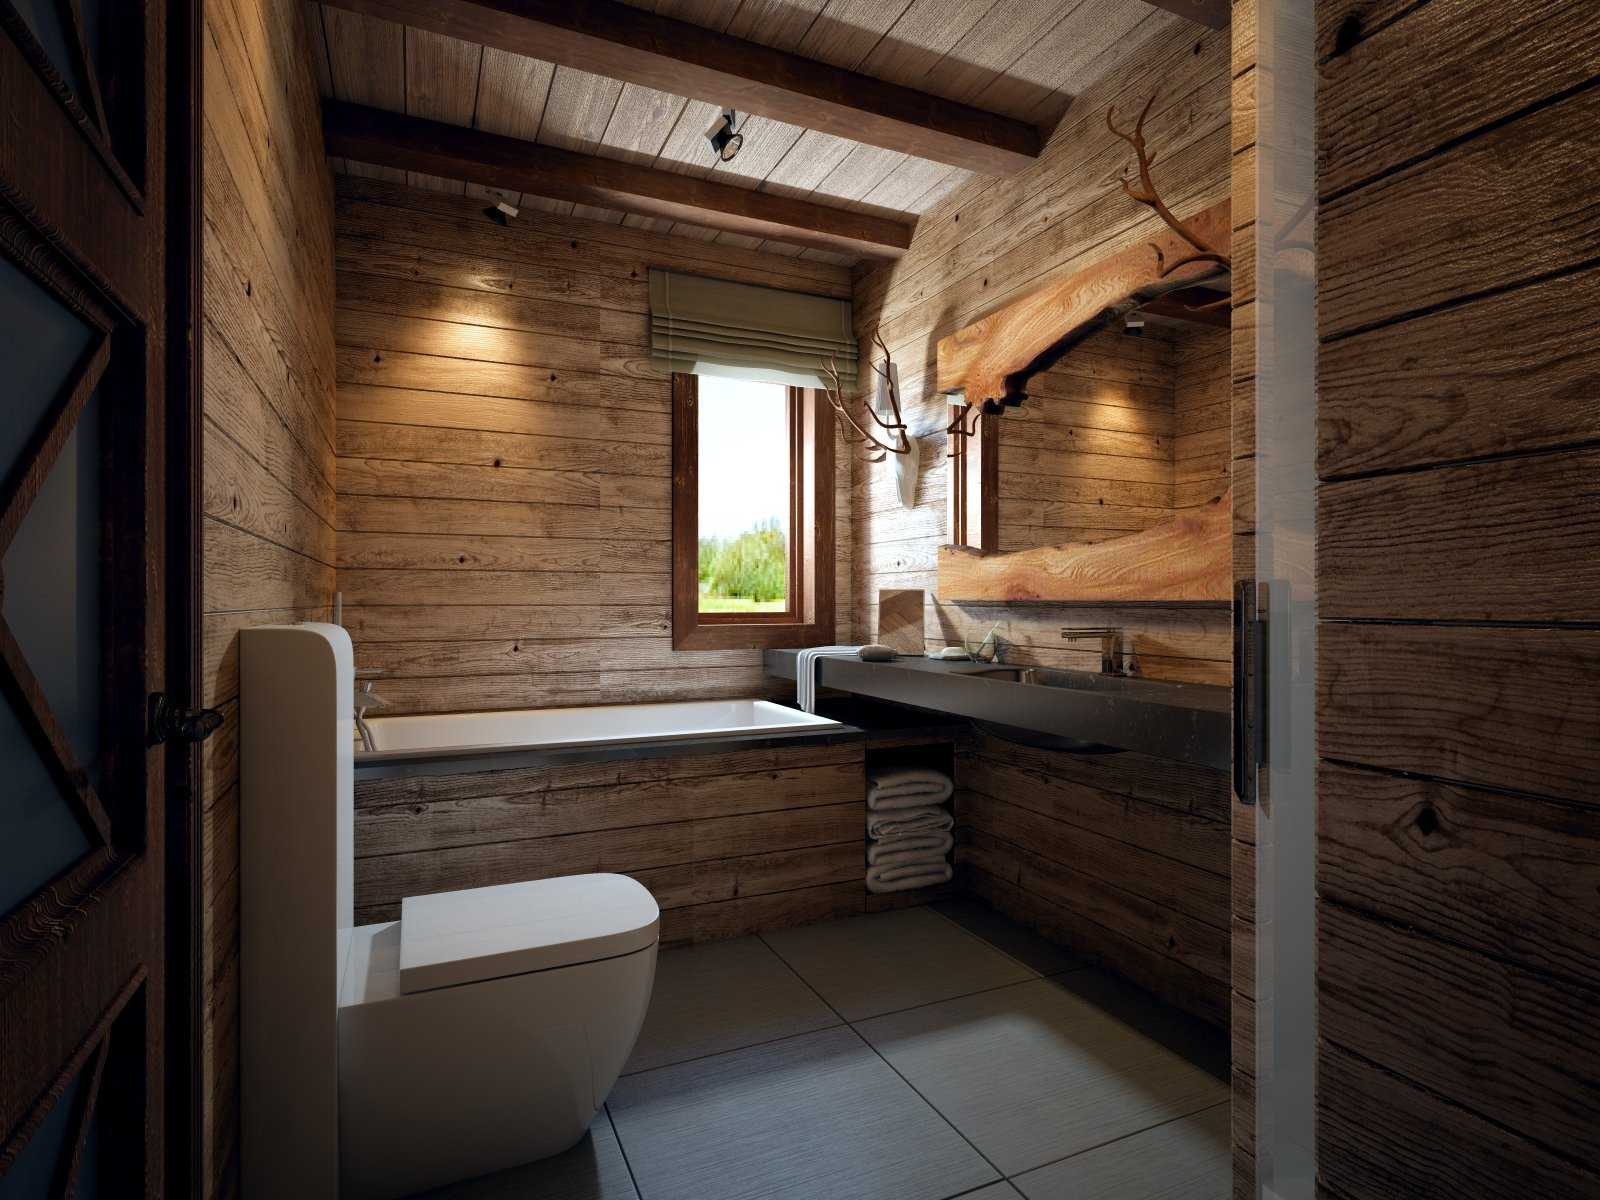 Отделка комнаты деревом. Ванная комната в деревянном доме. Ванная в деревянном стиле. Ваееая в деревянном доме. Санузел в стиле Шале.